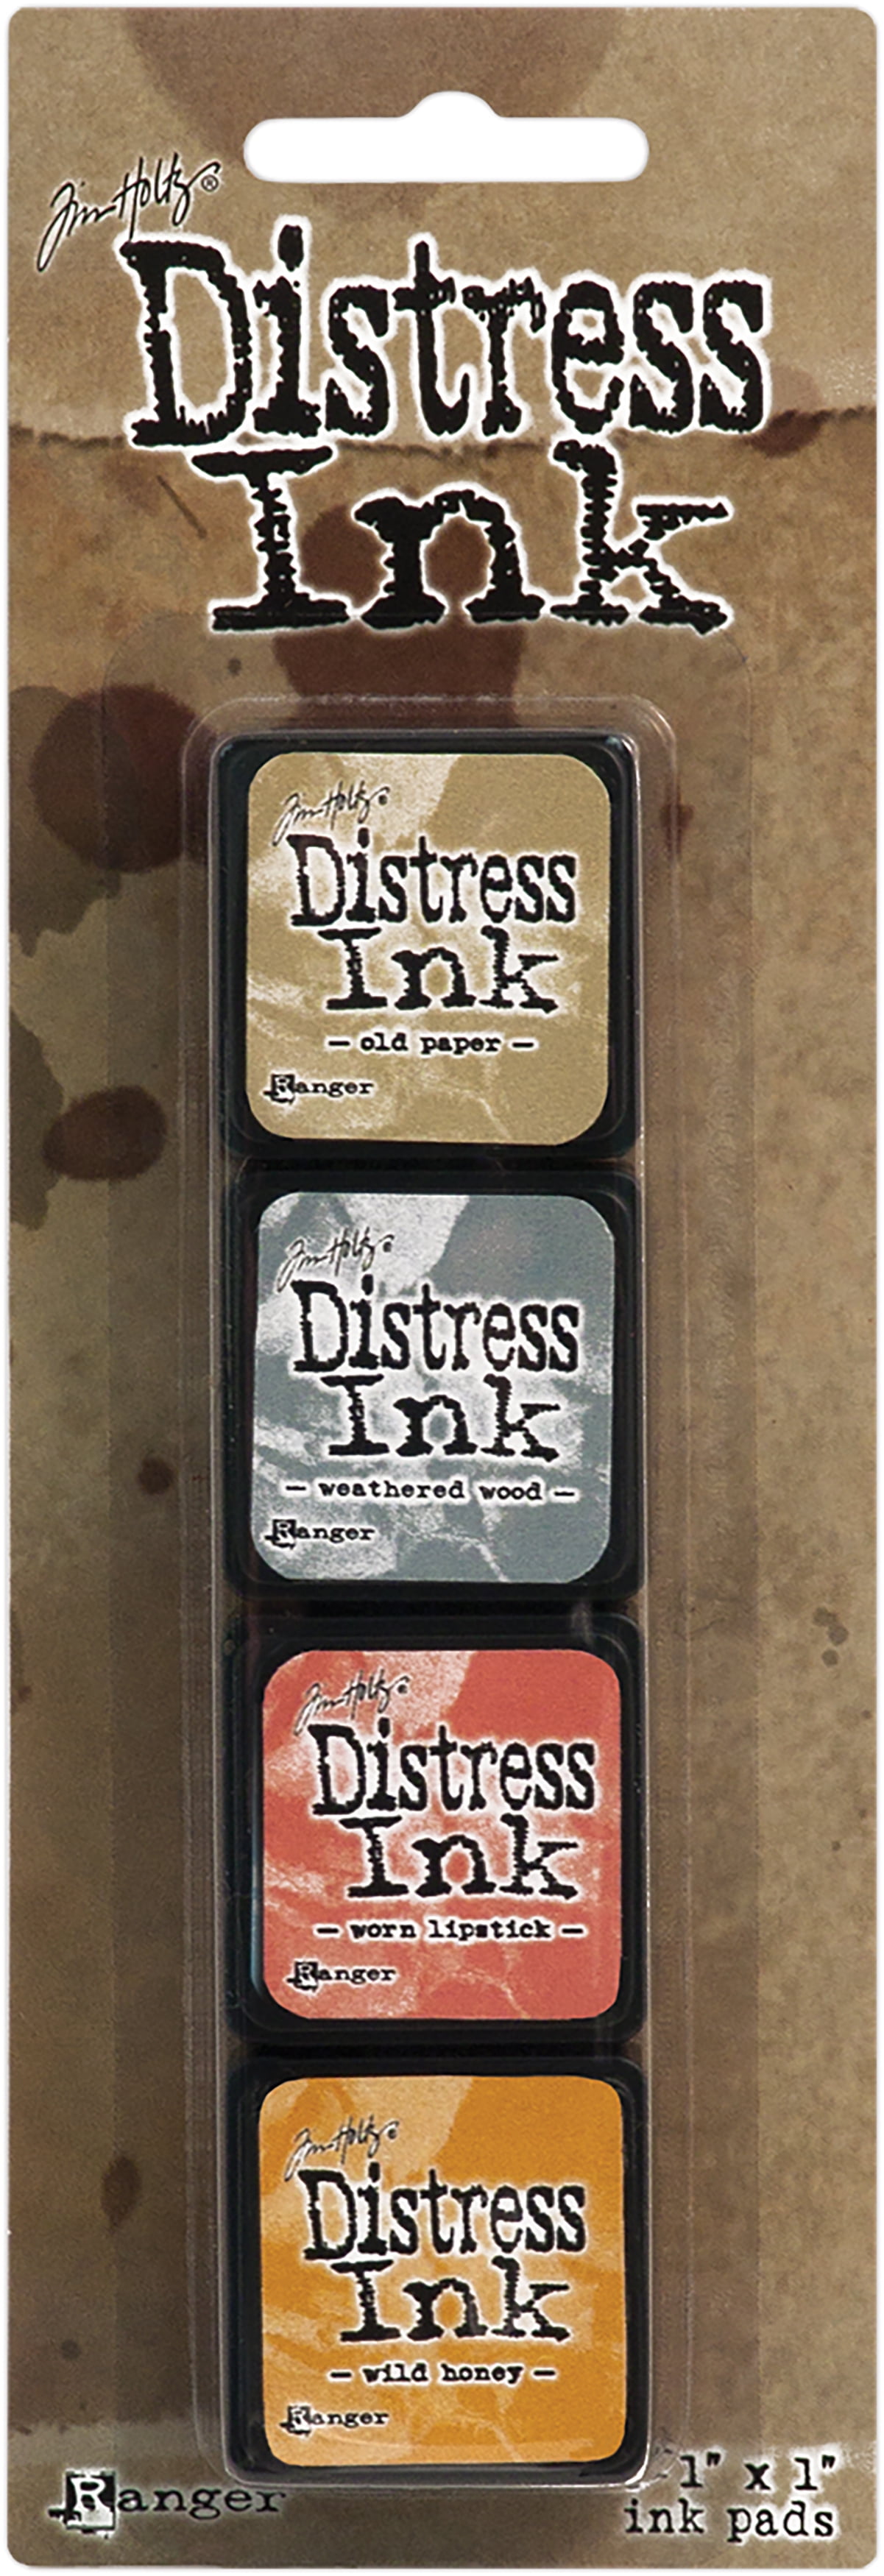 Tim Holtz Distress Mini Ink Pads-Black Soot